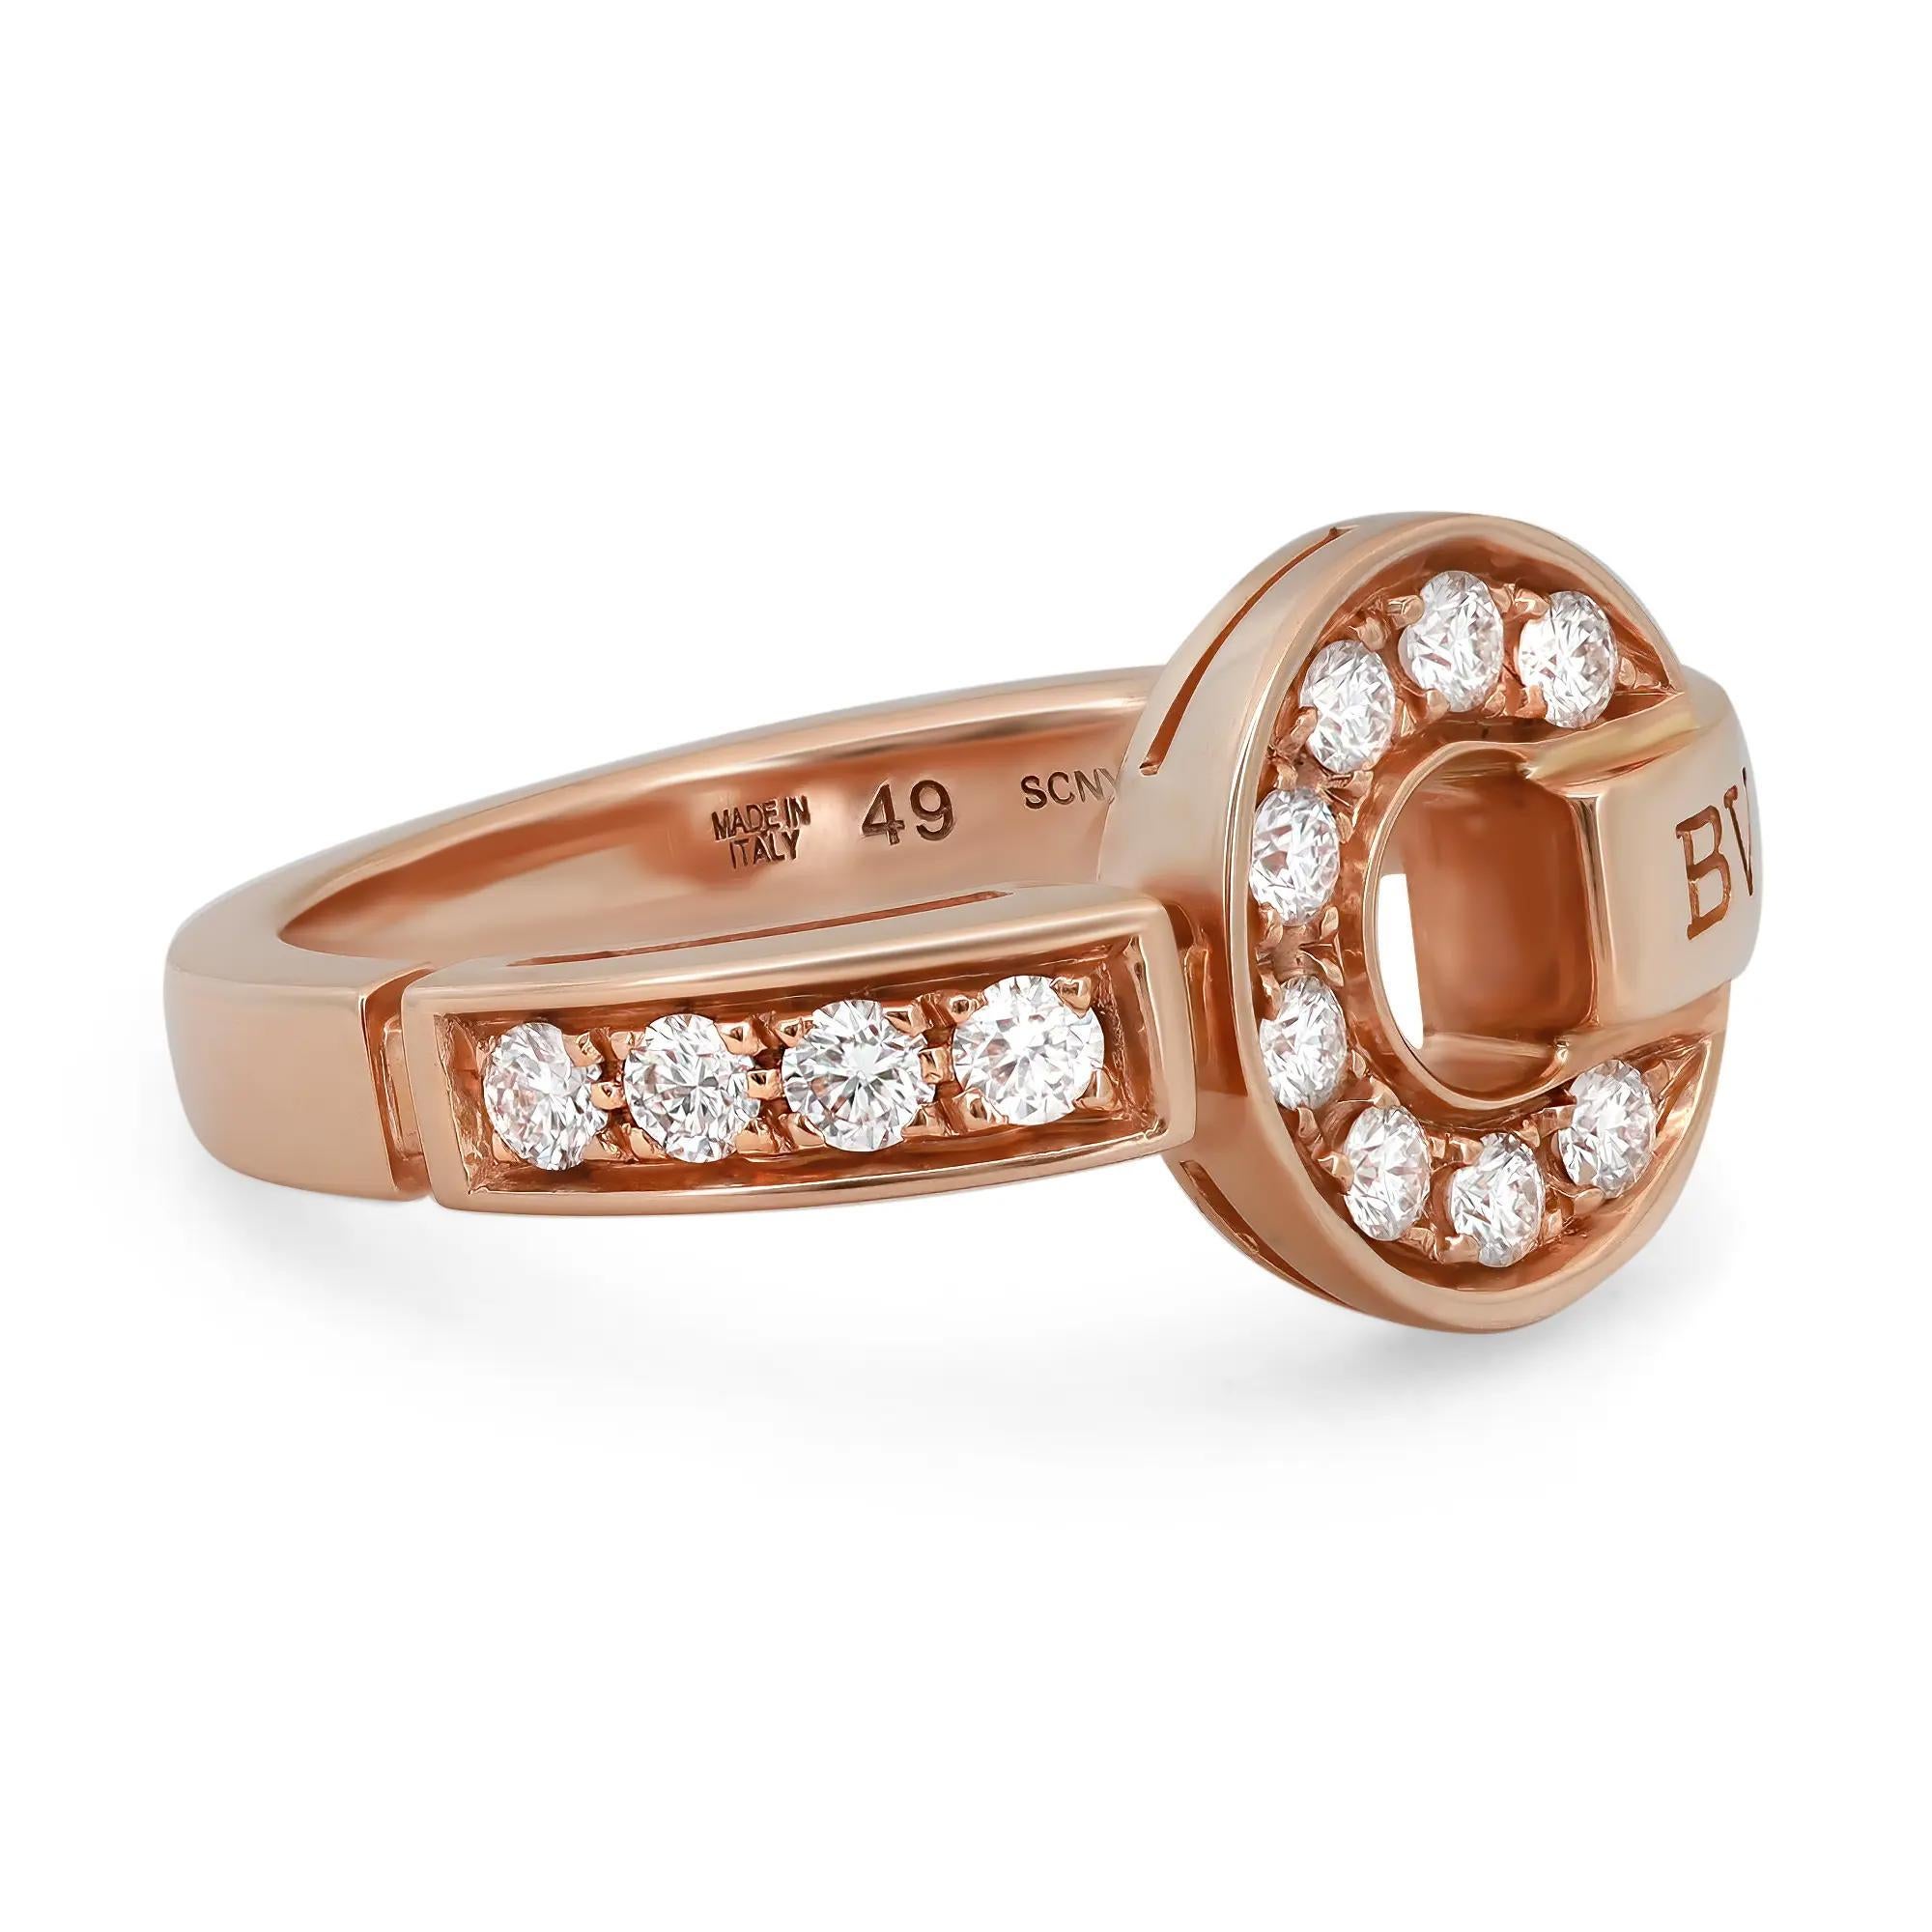 Dieser Ring von BVLGARI BVLGARI ist eine elegante Verschmelzung von Kultur und Moderne und ein zeitgemäßes Statement von Klasse. Das BVLGARI-Logo prangt auf der einen Bandschulter, runde Diamanten im Brillantschliff sind im kreisförmigen,